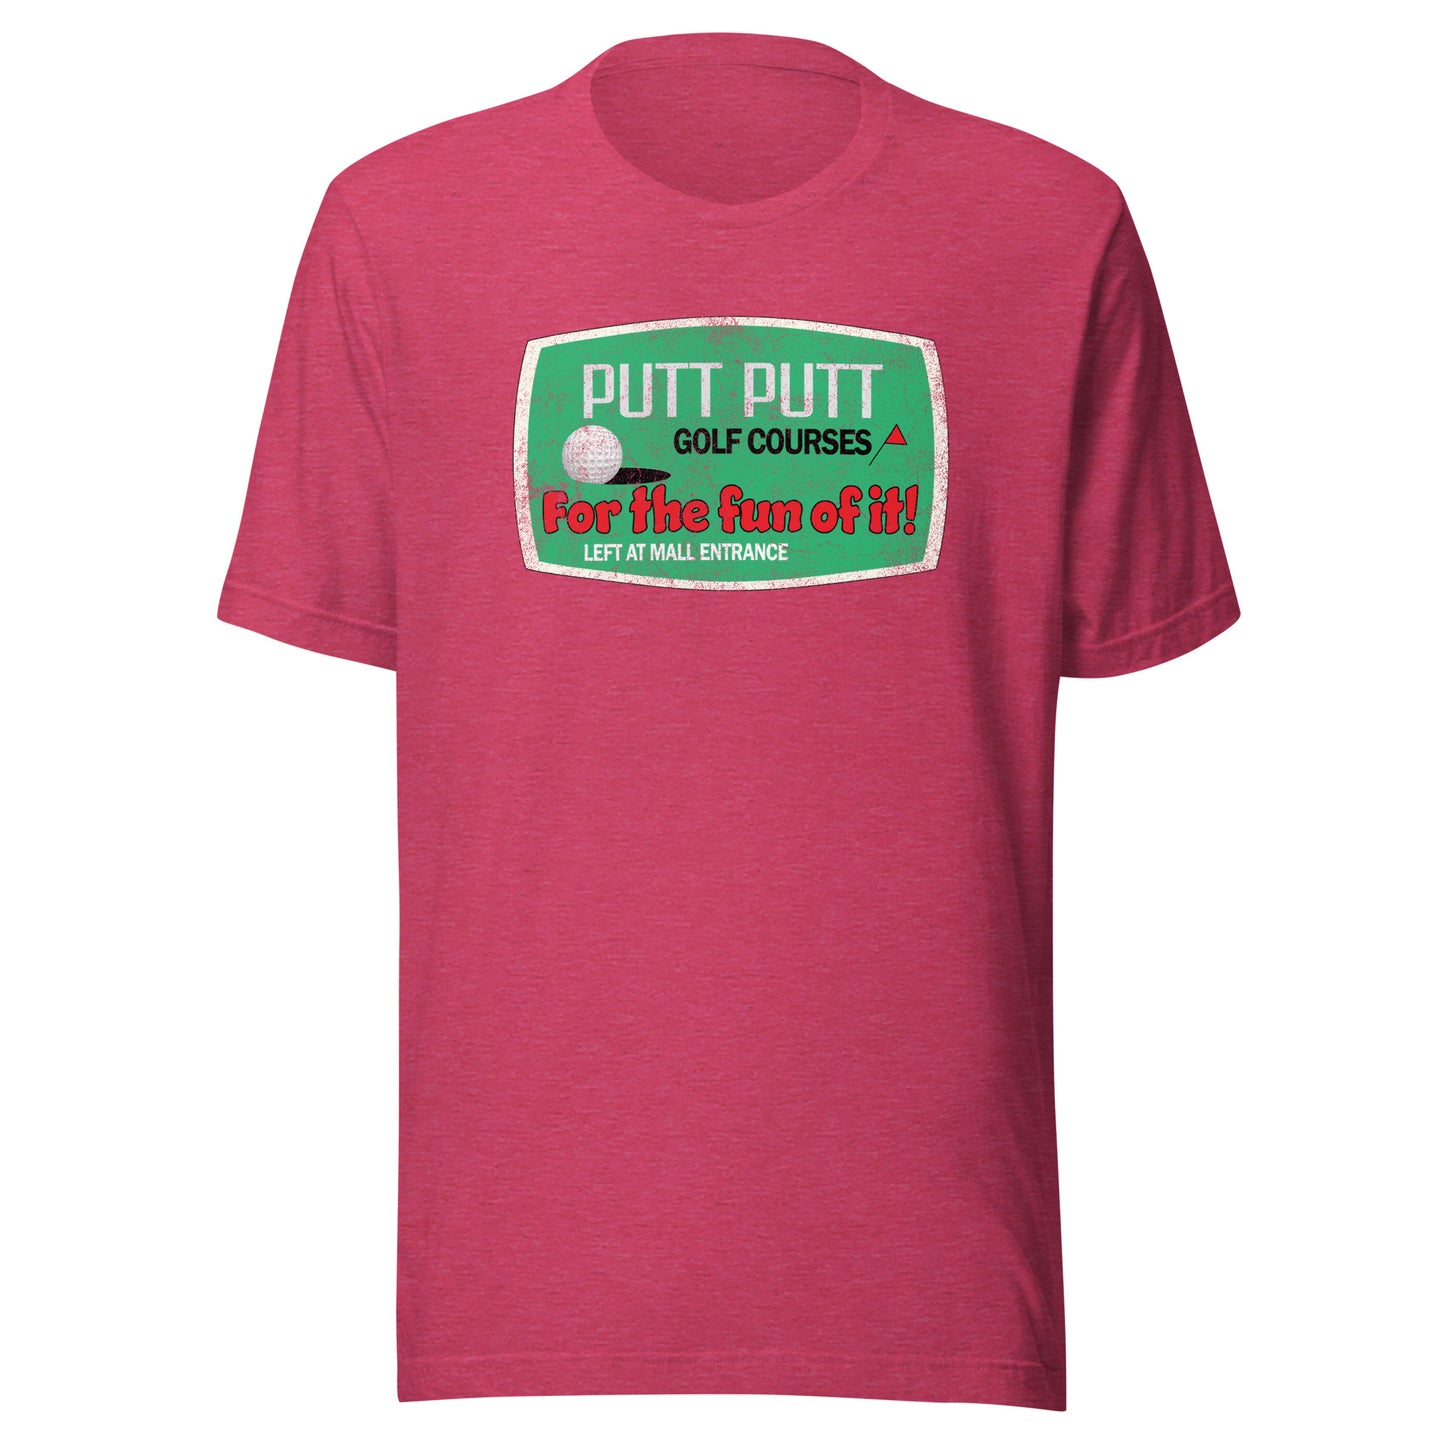 Putt Putt T-Shirt - Brockton, MA | Retro Mini Golf Vintage Tee